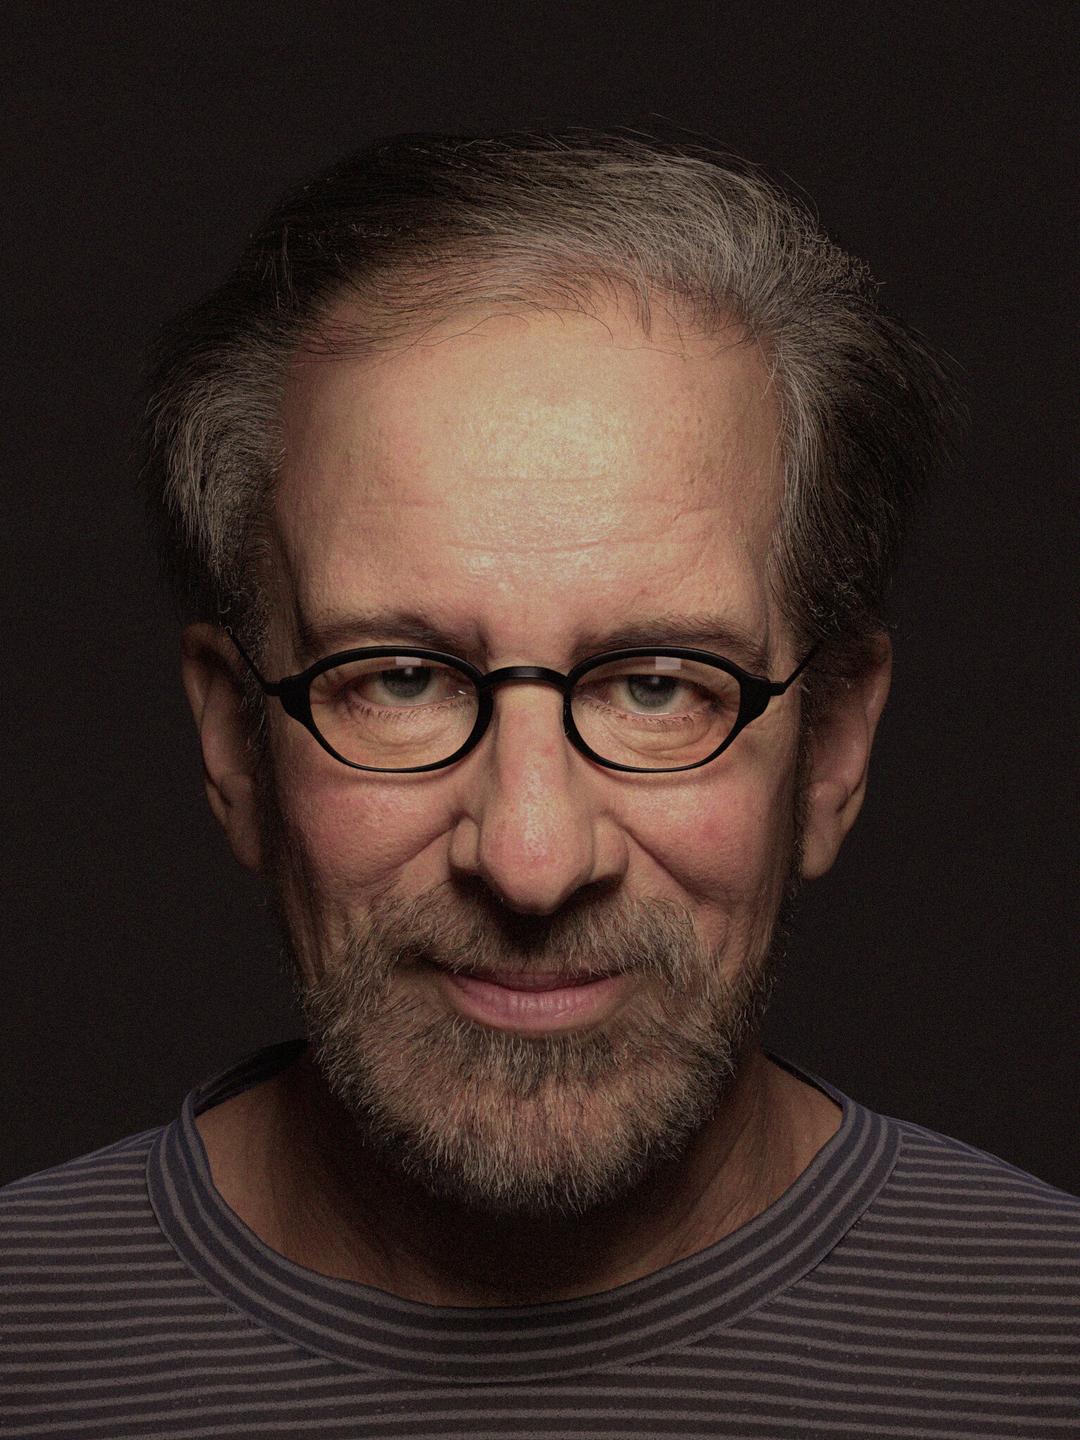 Steven Spielberg education